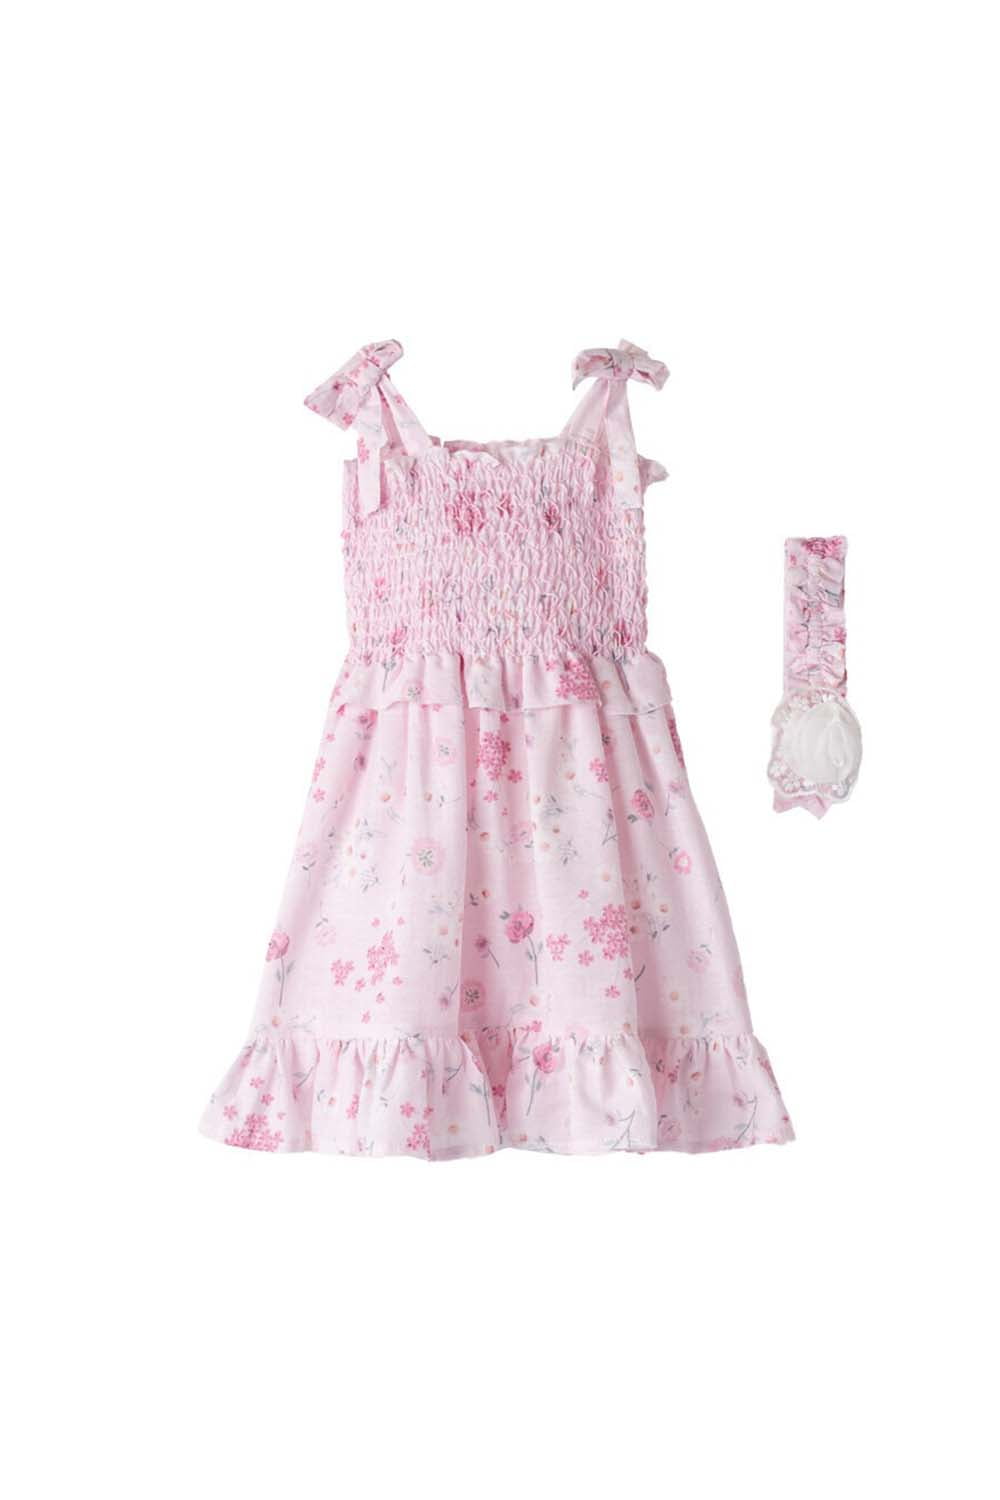 Παιδικό Φόρεμα Για Κορίτσι EBITA 242249 Ροζ